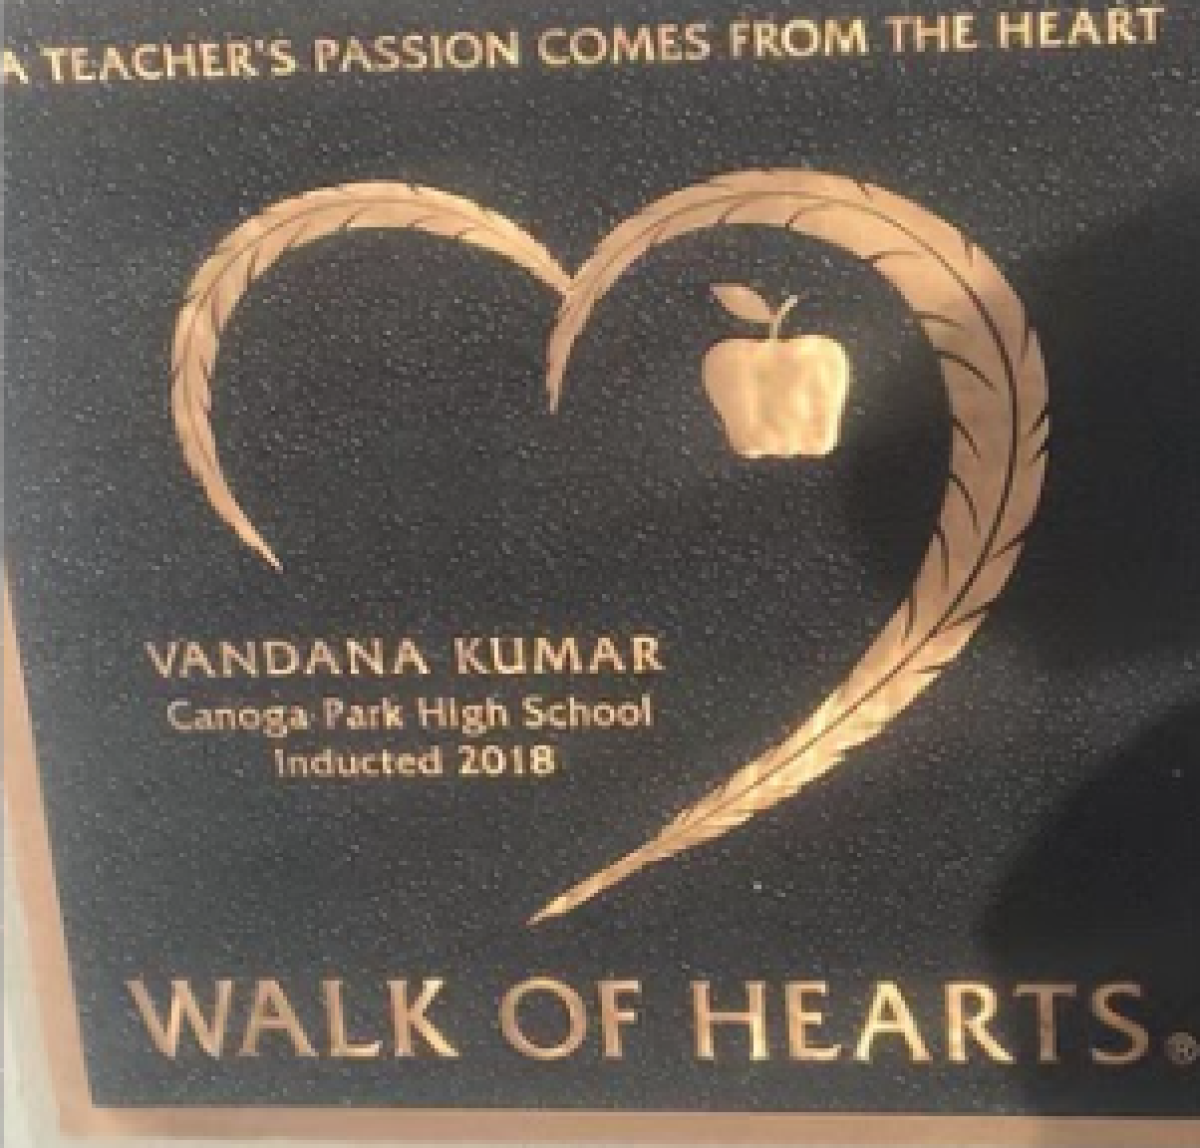 A "Walk of Hearts" plaque for Vandana Kumar